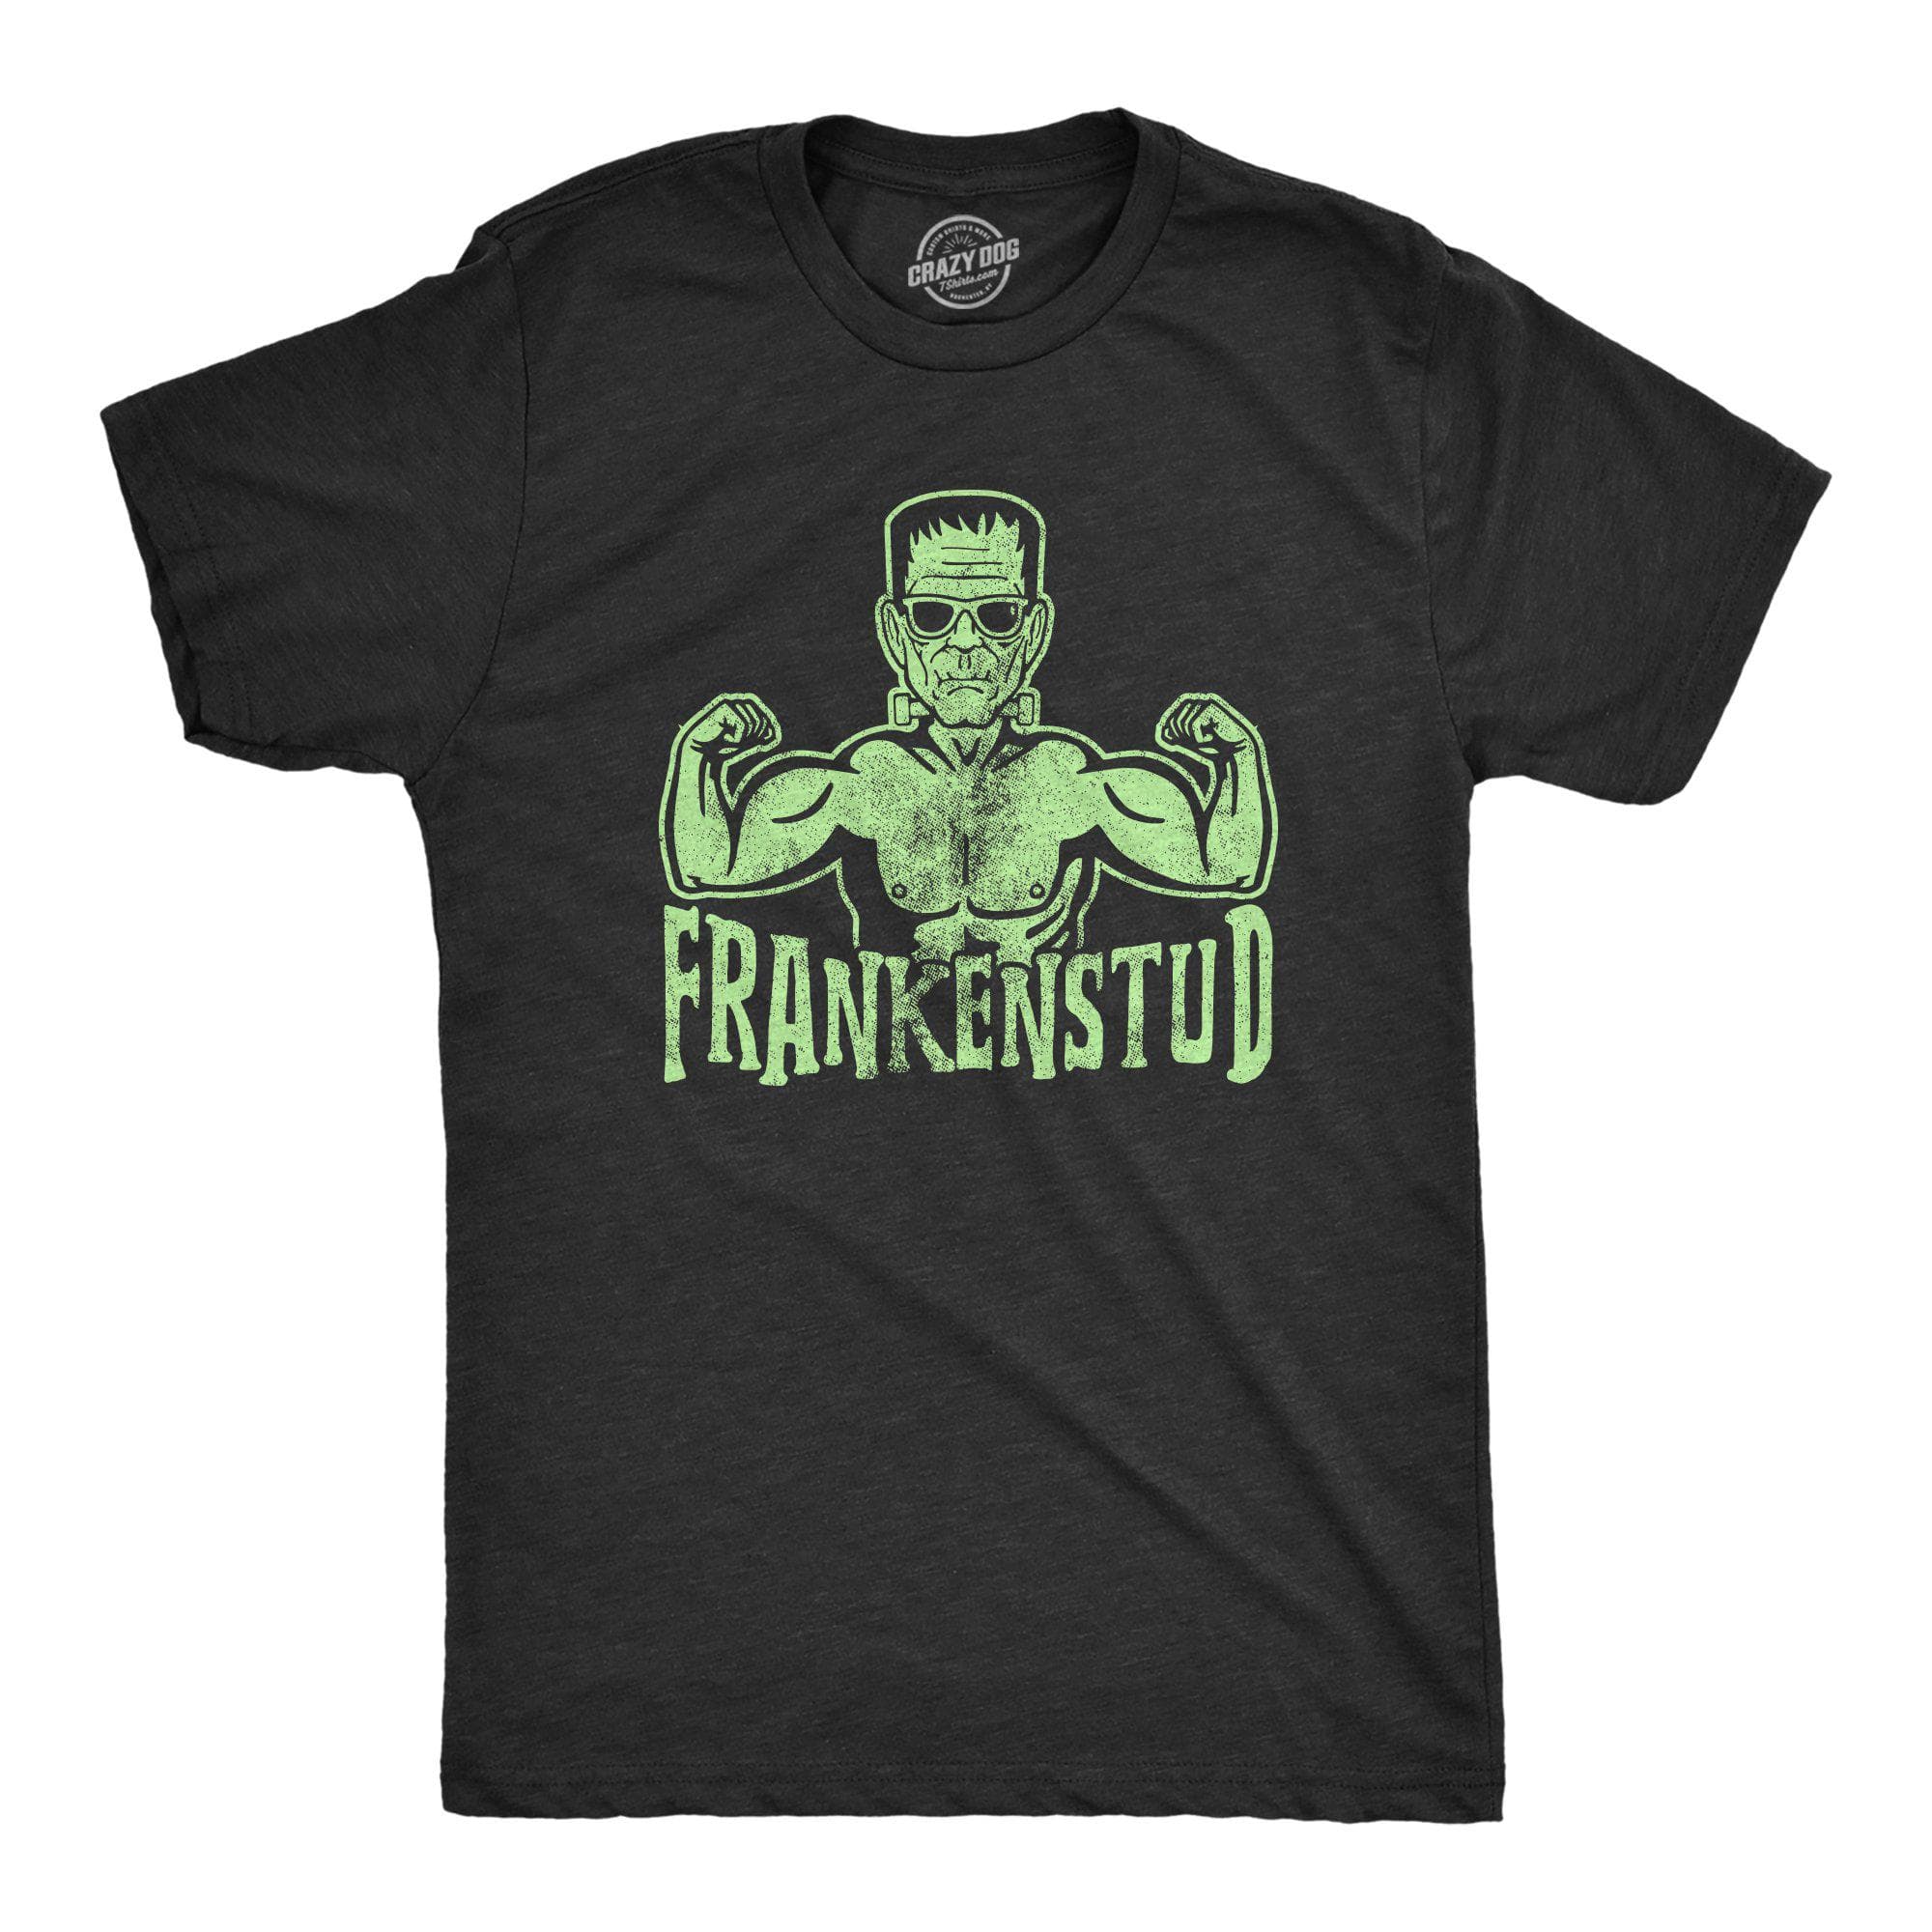 Frankenstud Men's Tshirt - Crazy Dog T-Shirts